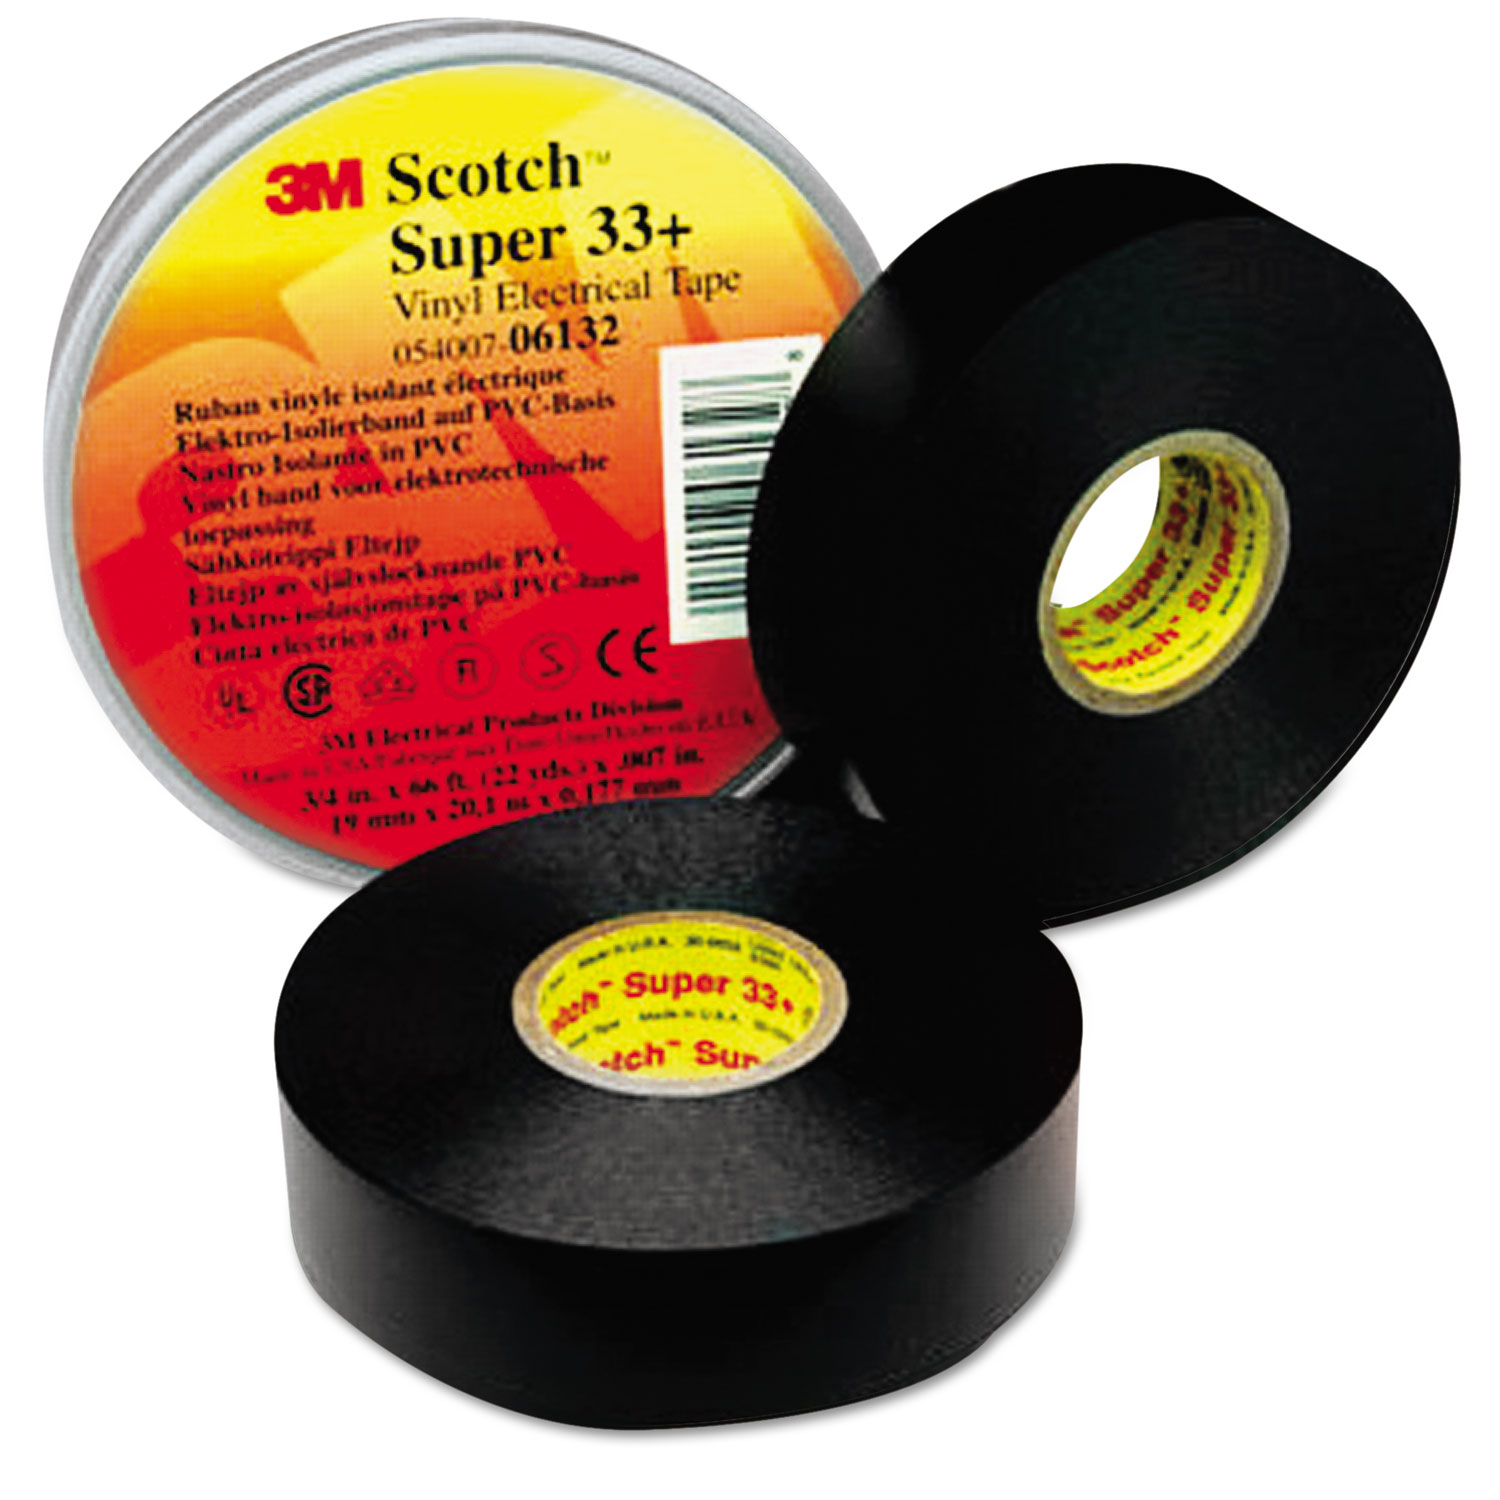 Scotch 33+ Super Vinyl Electrical Tape, 3/4